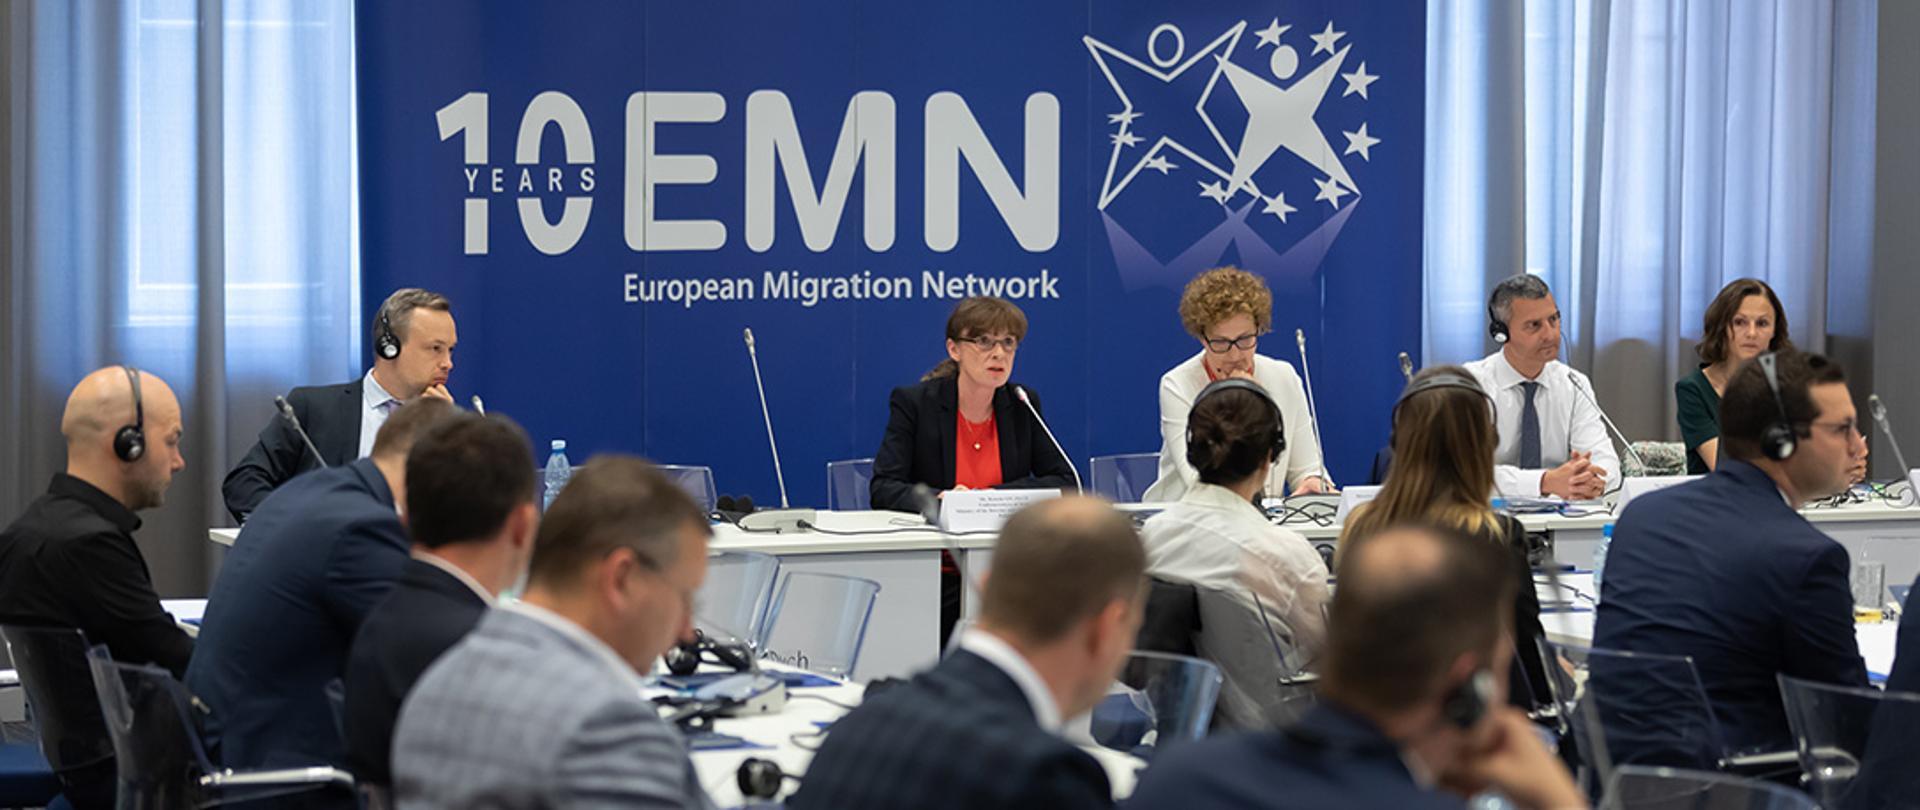 Wystąpienie wiceminister Renaty Szczęch podczas konferencji European Migration Network.